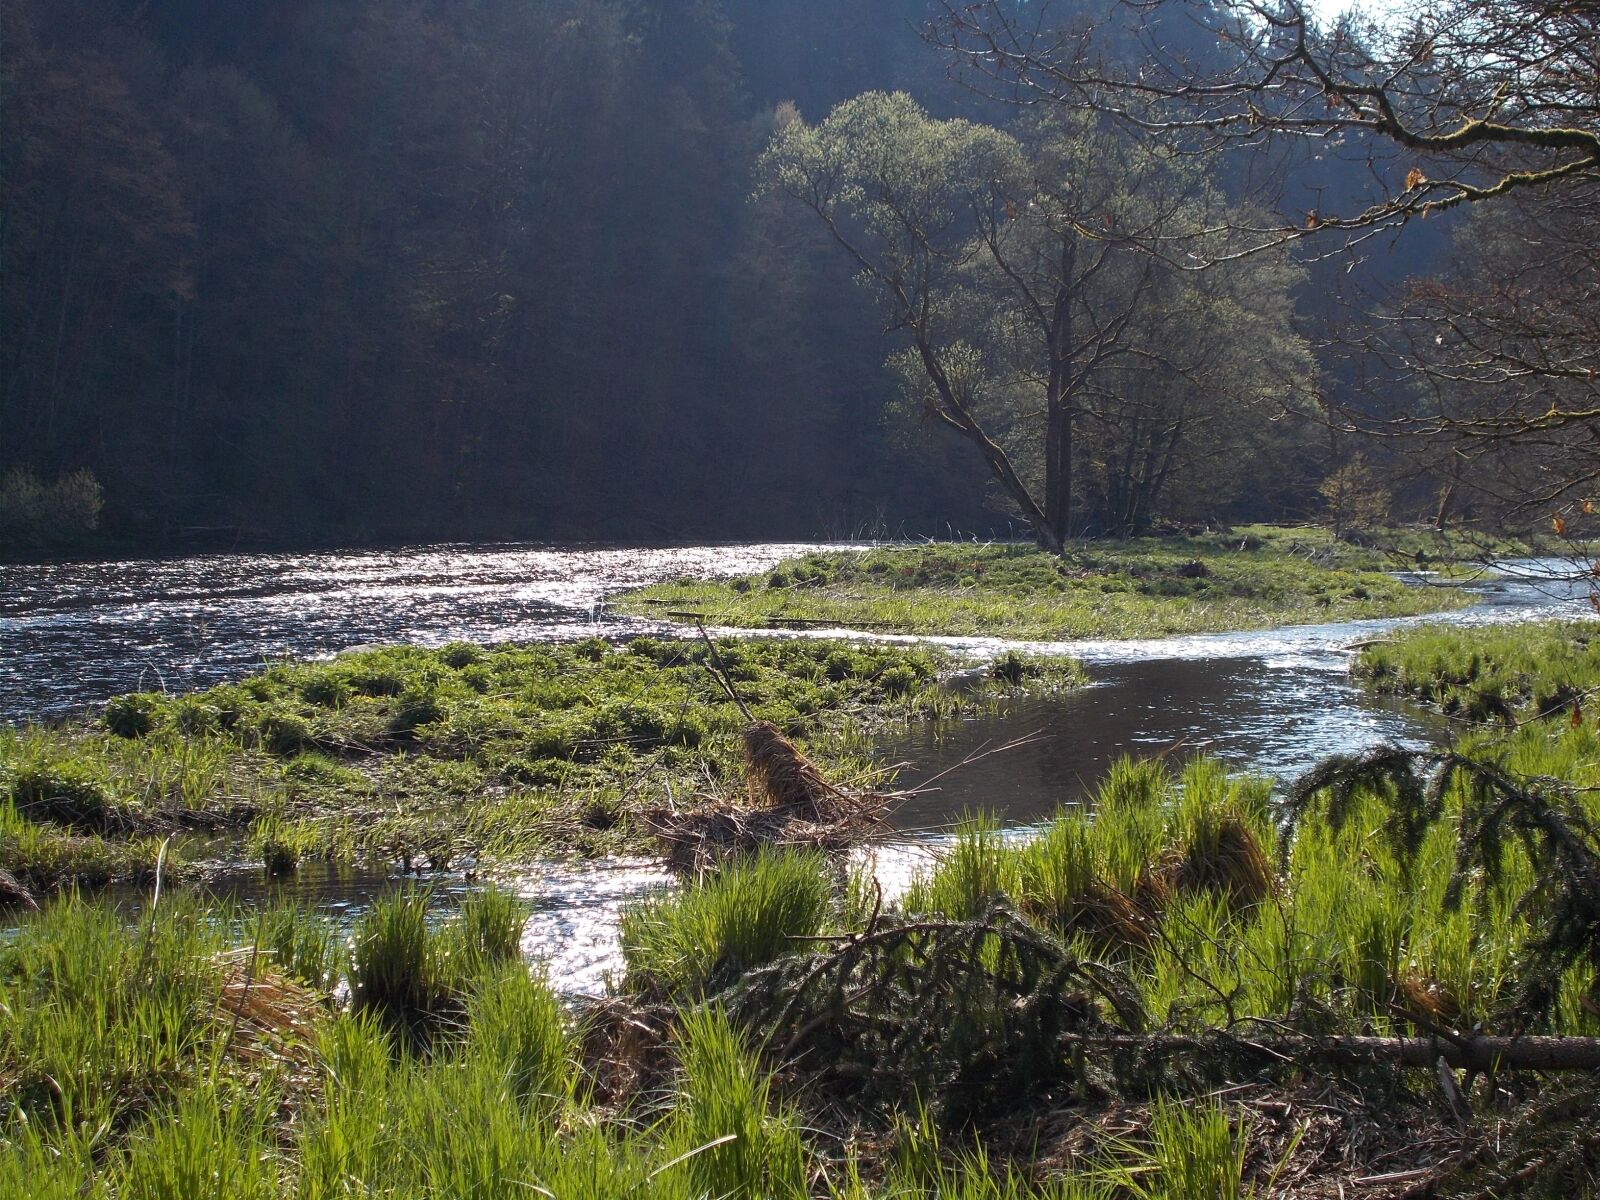 Nikon Coolpix L31 sample photo. Nature recording, river landscape photography